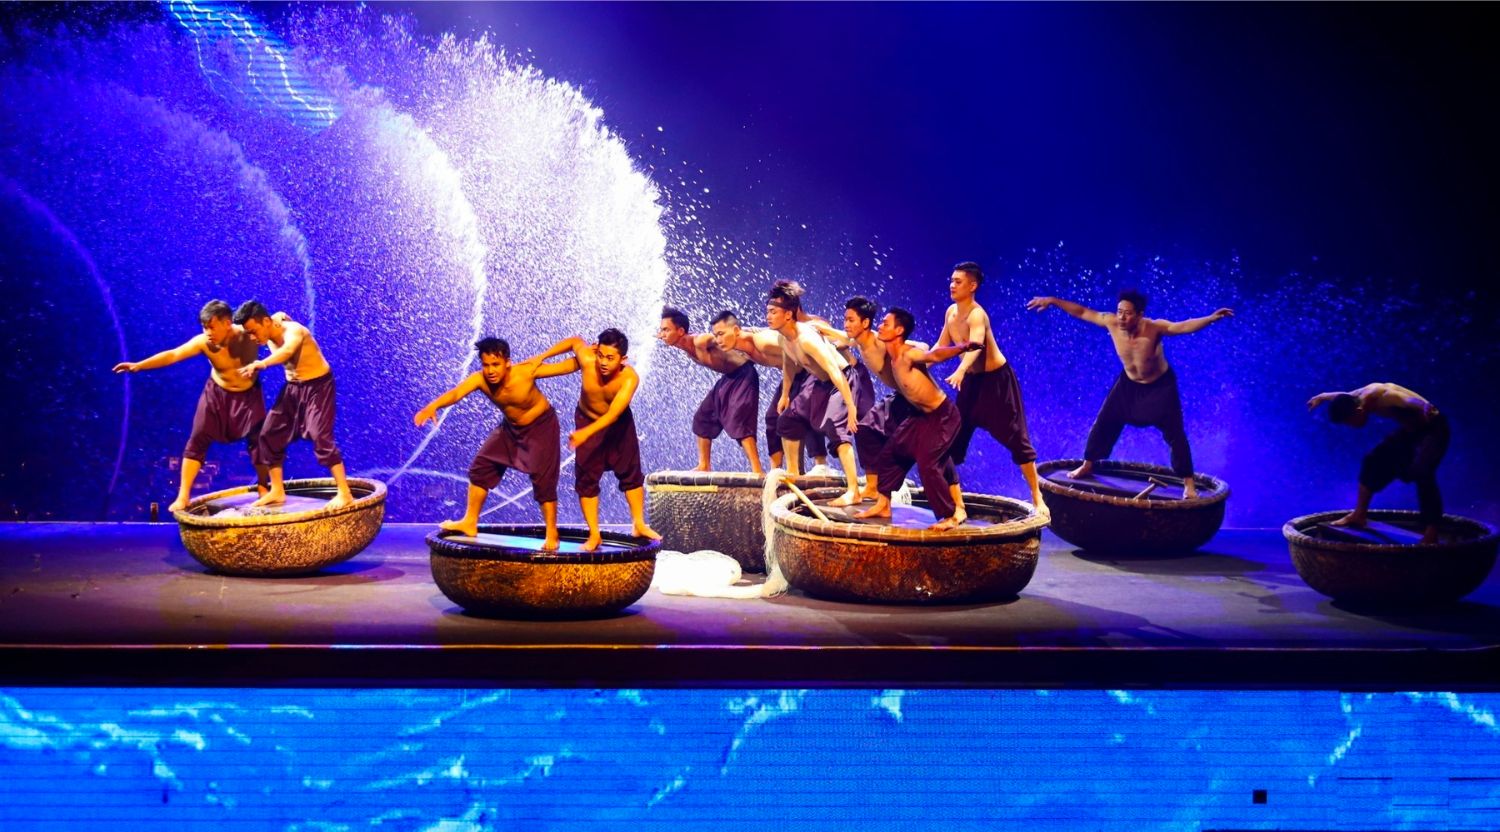 Fishermen Show còn có tên gọi tiếng Việt là Biểu diễn nhạc nước Huyền Thoại Làng Chài. Đây là một chương trình biểu diễn nghệ thuật được dàn dựng cực kì công phu, có sự tham gia của đông đảo các vũ công cùng các nghệ nhân chuyên nghiệp, nổi tiếng nhất. Đặc biệt, Fishermen Show có sự đầu tư, kết hợp của các hiệu ứng ánh sáng, âm thanh, kỹ xảo 3D và hệ thống phun nước vô cùng hiện đại. Với hệ thống sân khấu cực rộng, nơi đây có thể chứa đến 1500 khách vào các dịp cao điểm.